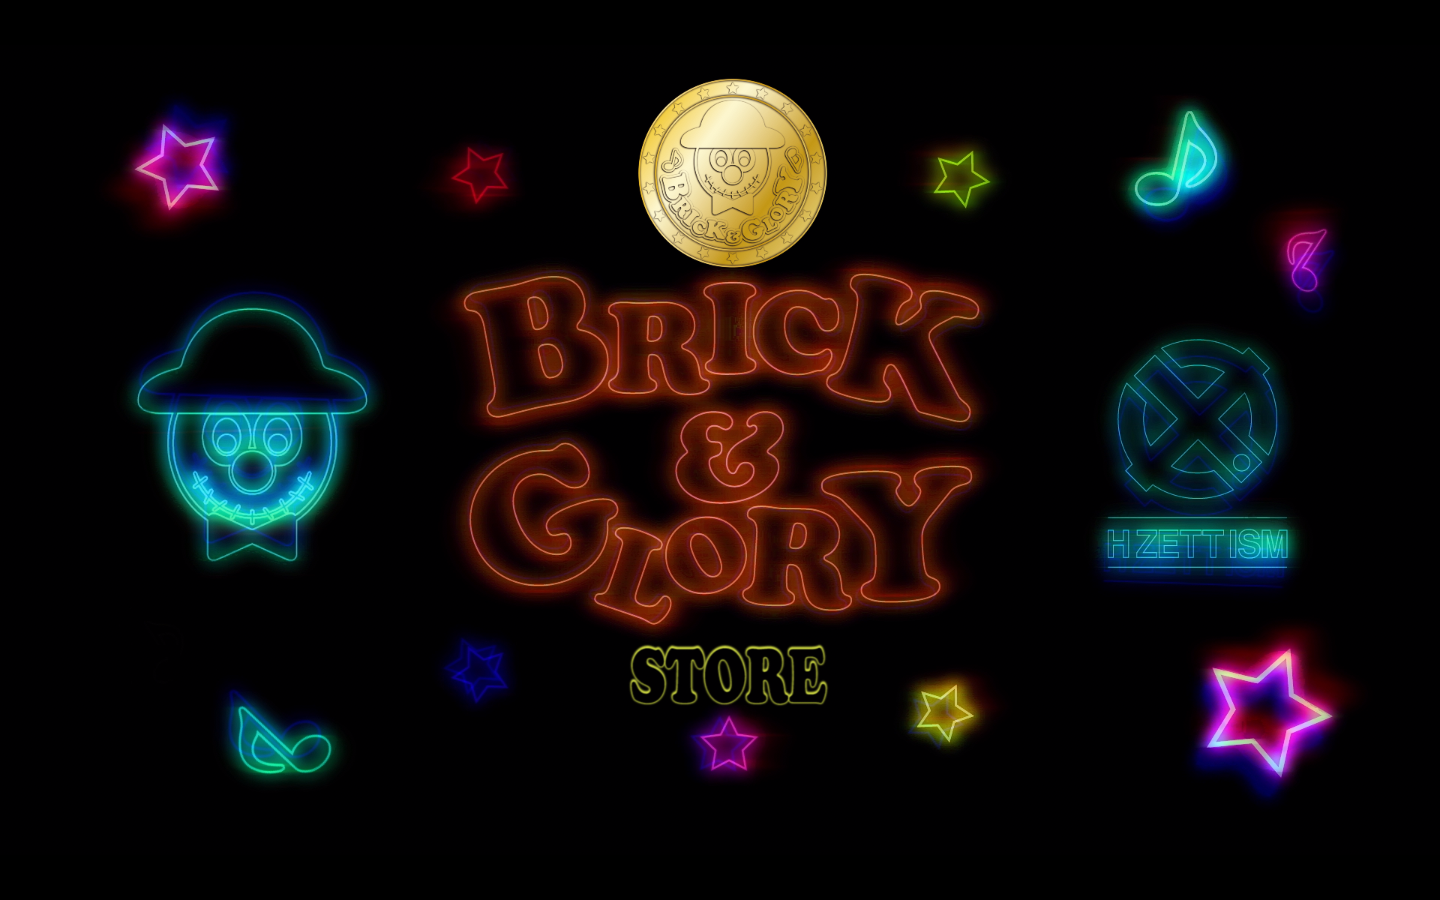 BRICK&GLORY STORE